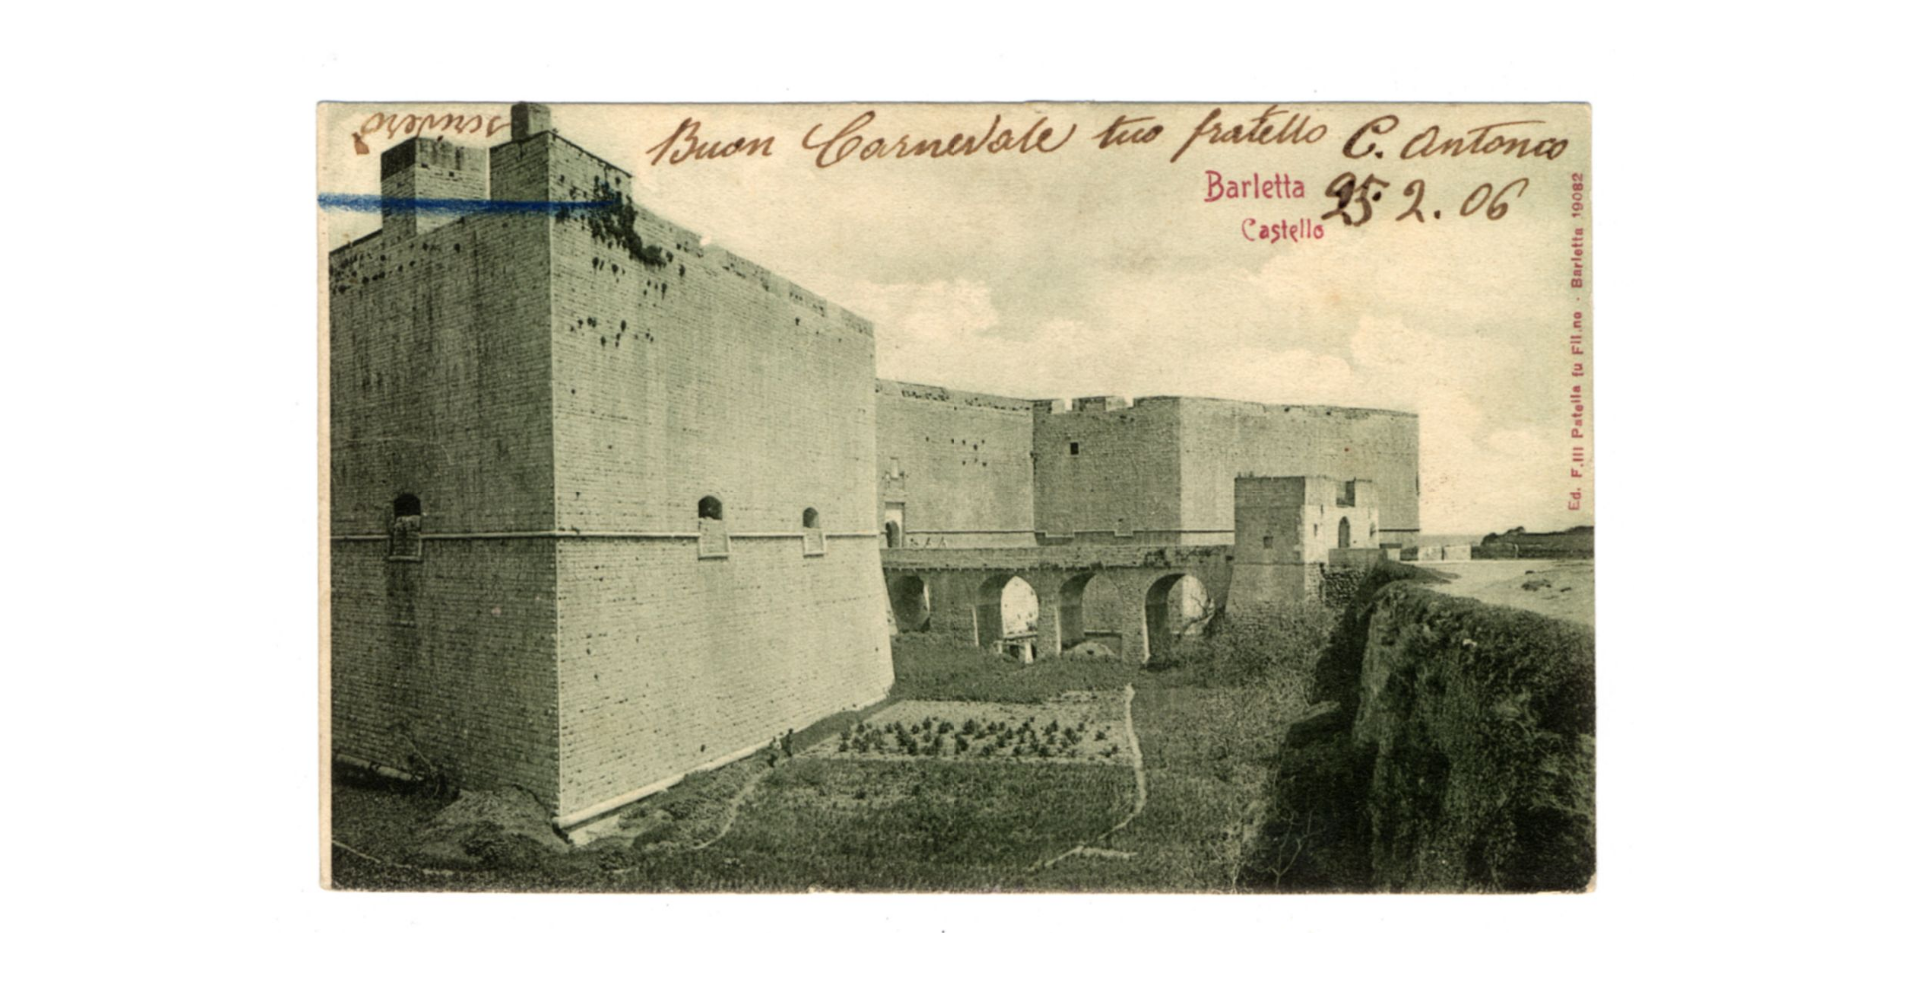 Fotografo non identificato, Barletta - Castello, 1906, cartolina, FFC040033